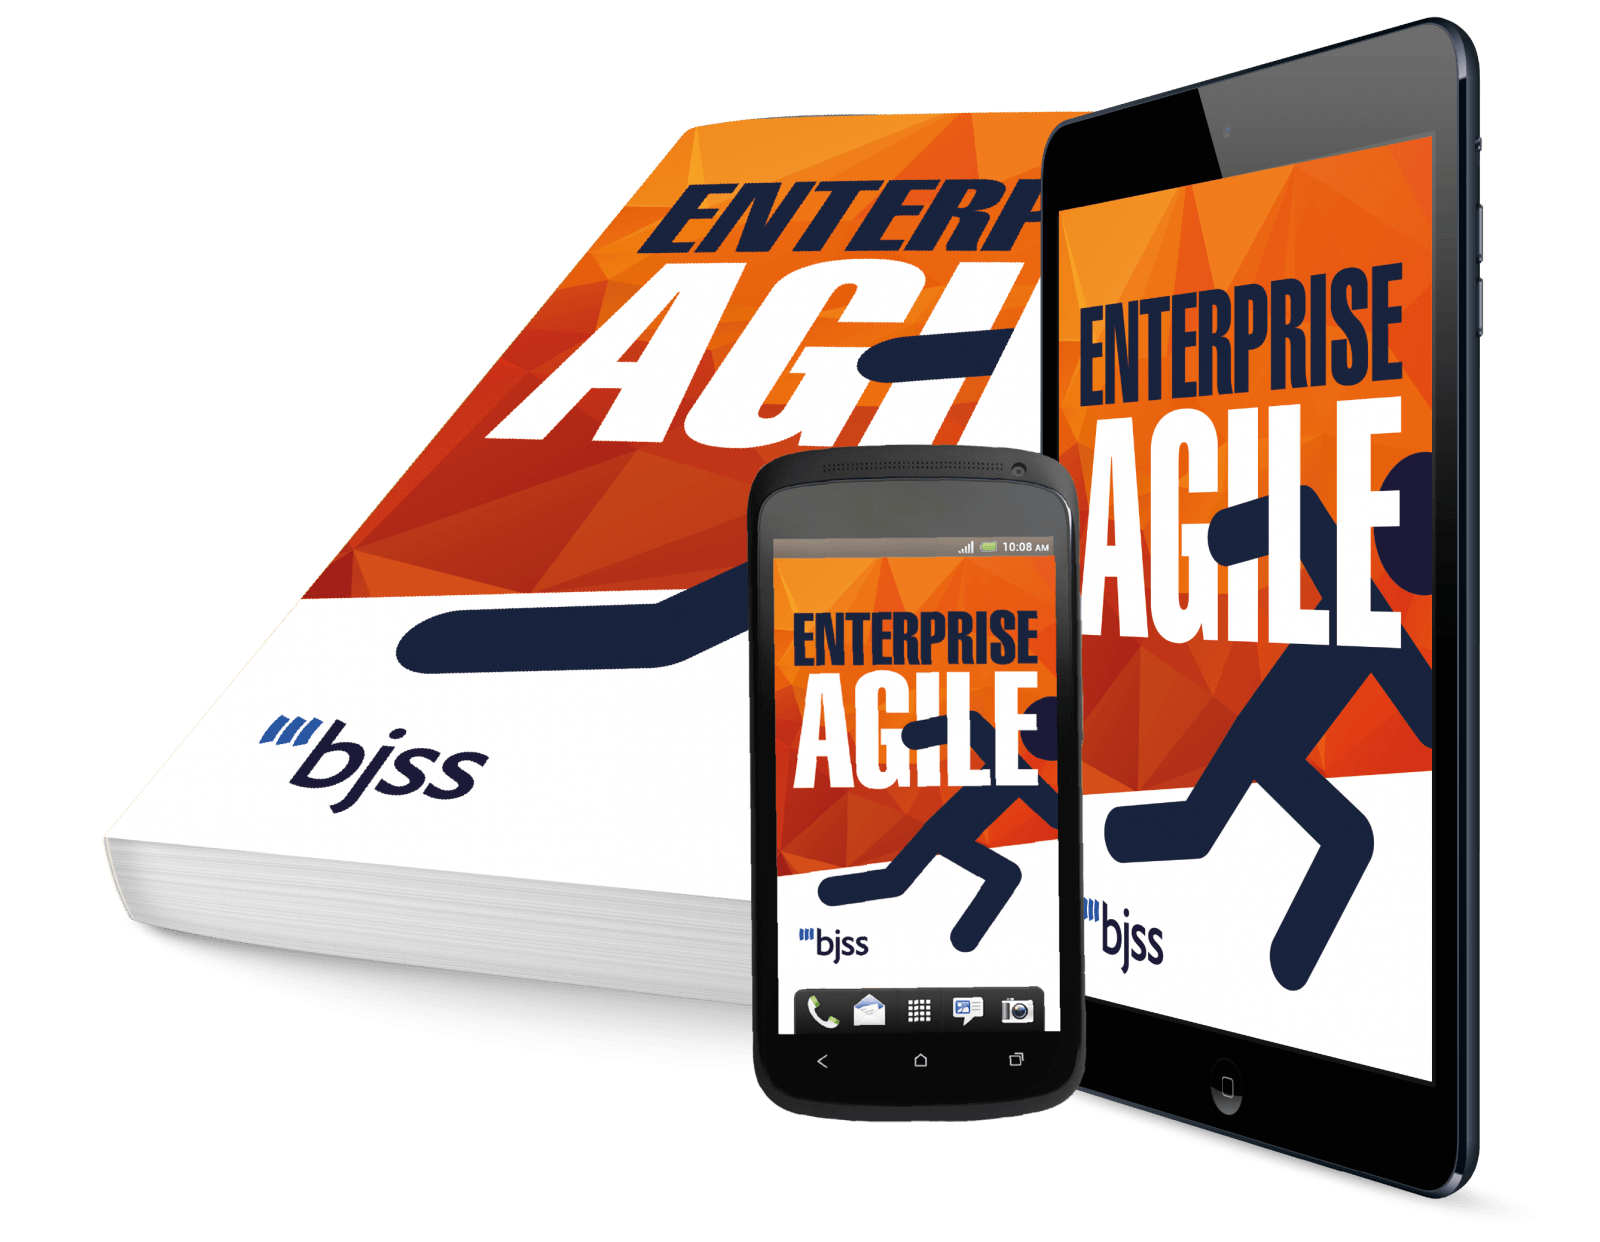 Enterprise Agile technology devices